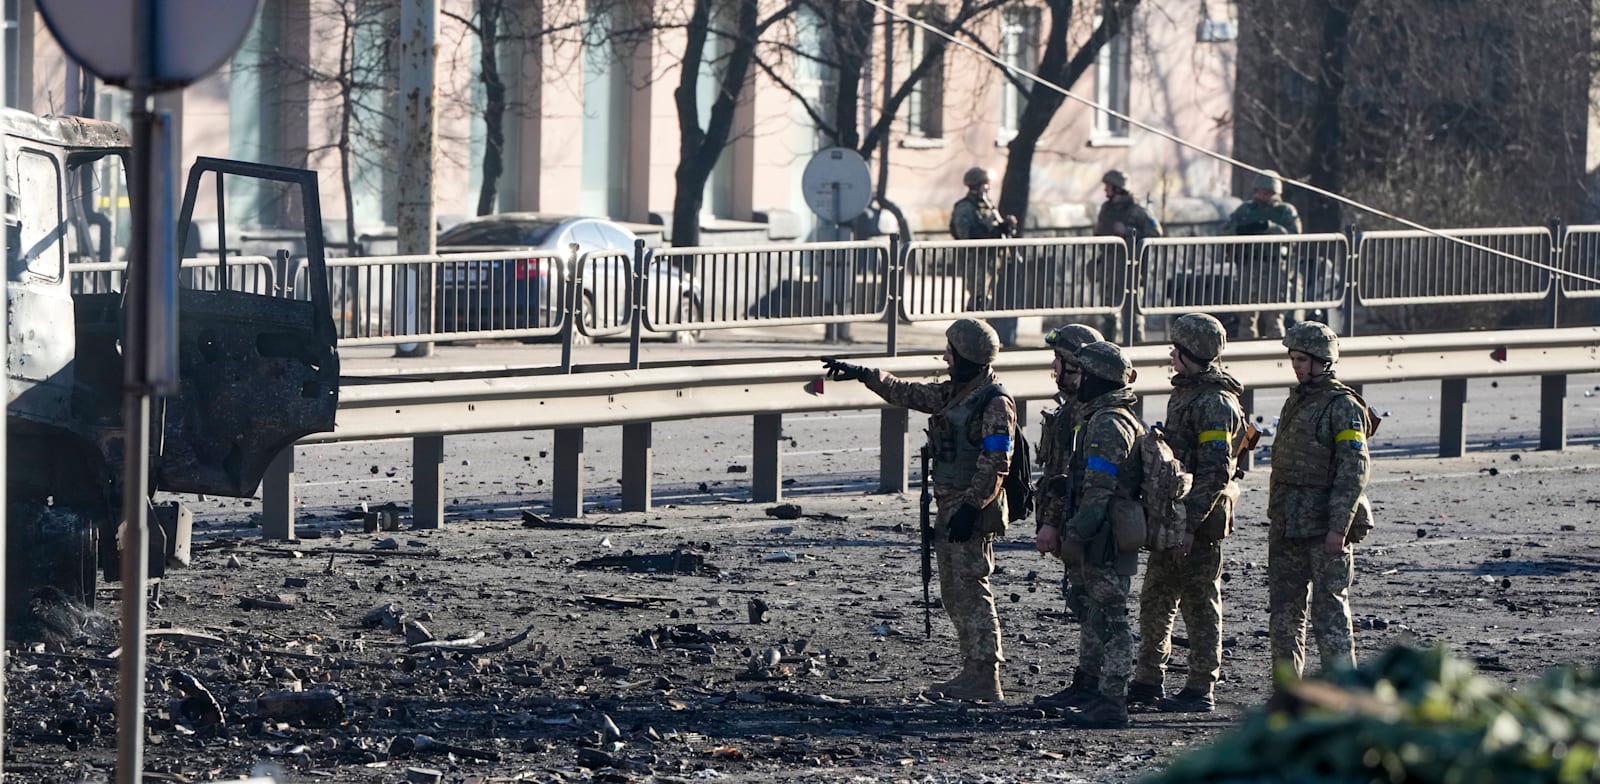 חיילים אוקראינים עומדים ליד משאית צבאית שעולה באש, בקייב / צילום: Associated Press, Efrem Lukatsky